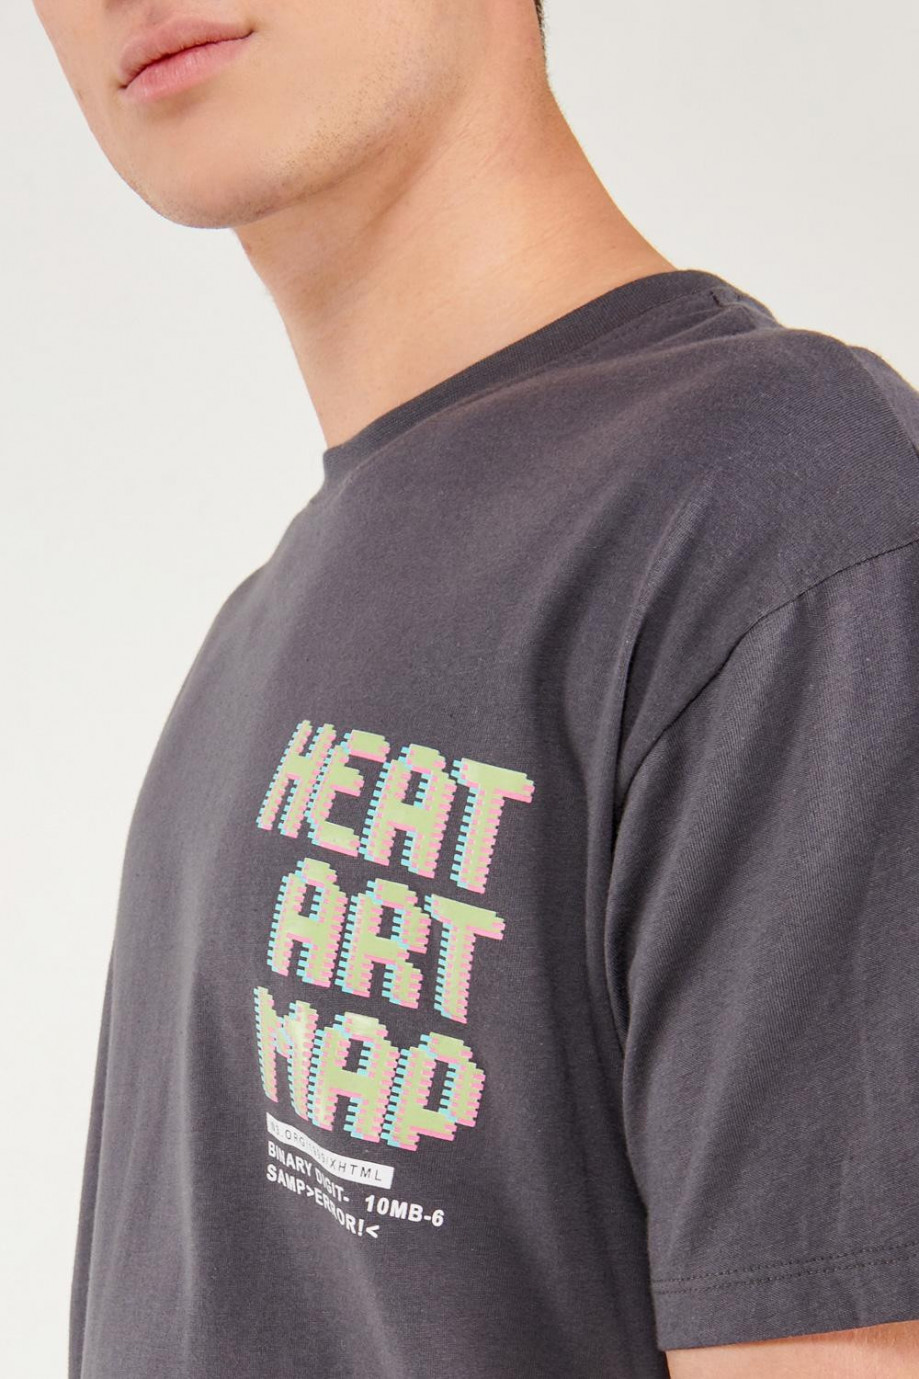 Camiseta unicolor manga corta con letras y diseños estampados